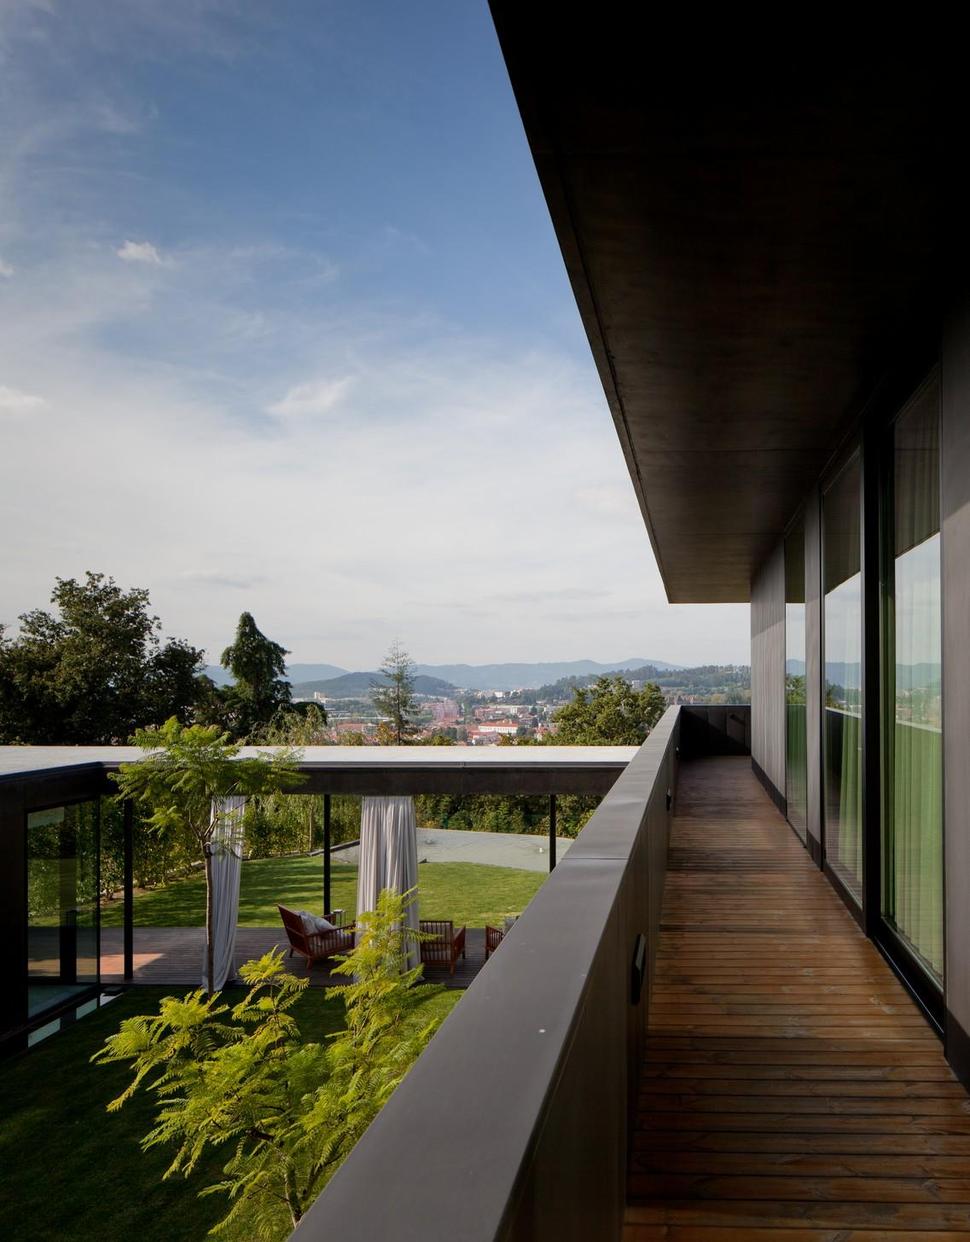 black-home-with-bright-interior-built-into-grassy-hillside-11-inside-upper-deck.jpg